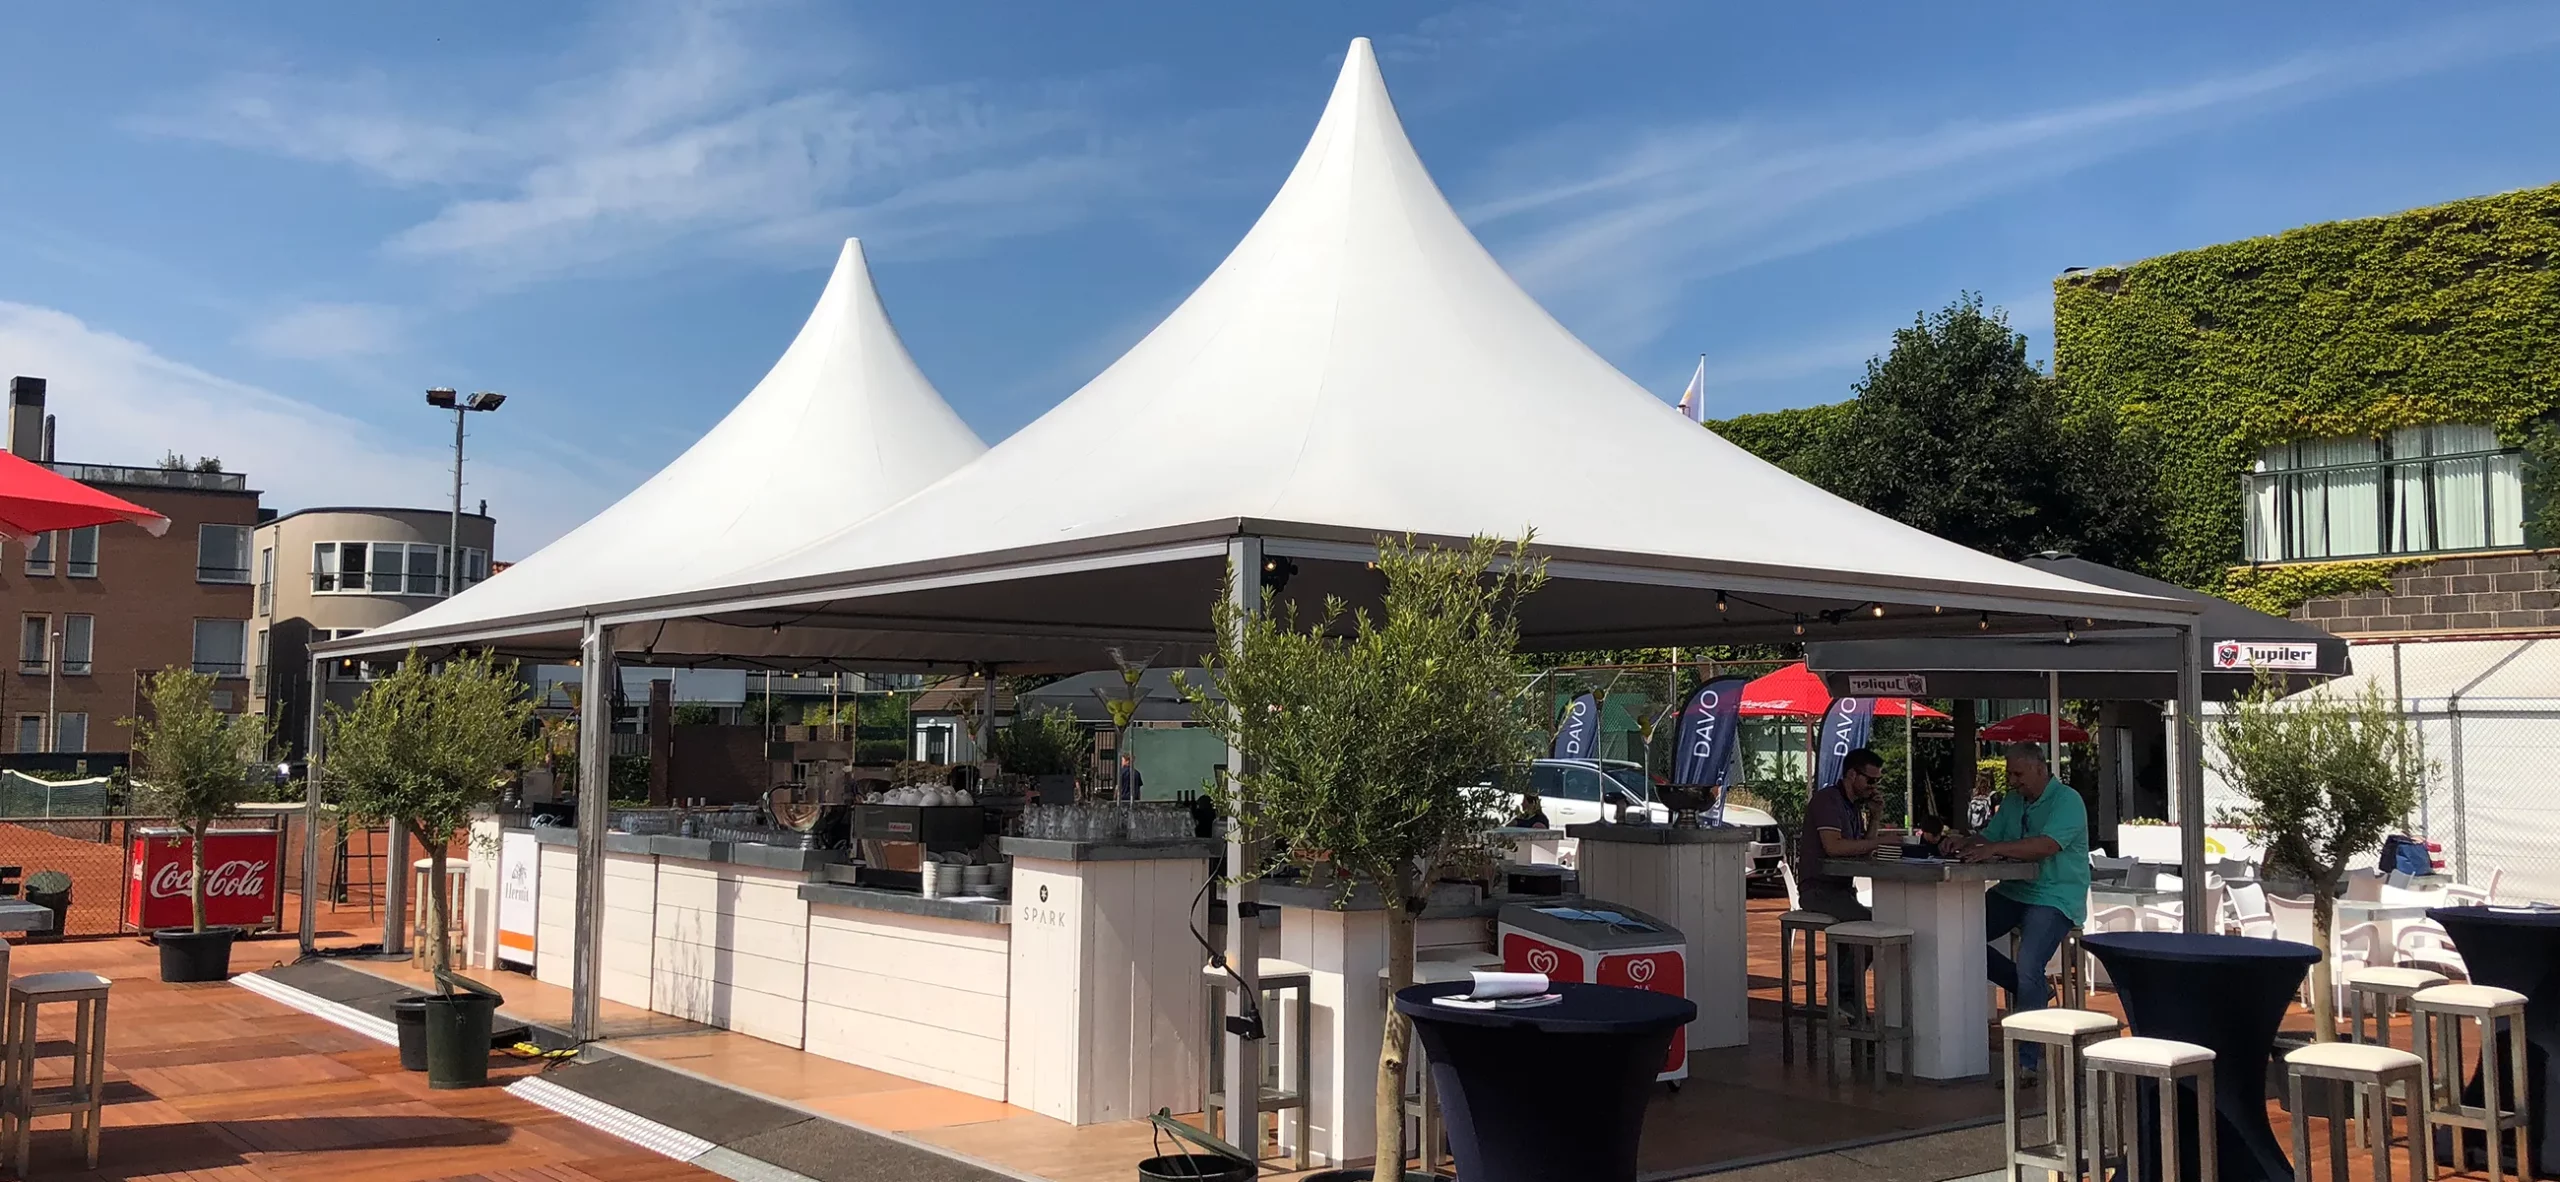 VIP-pagode auf Tennis Turnier - Zelte für Sportevents